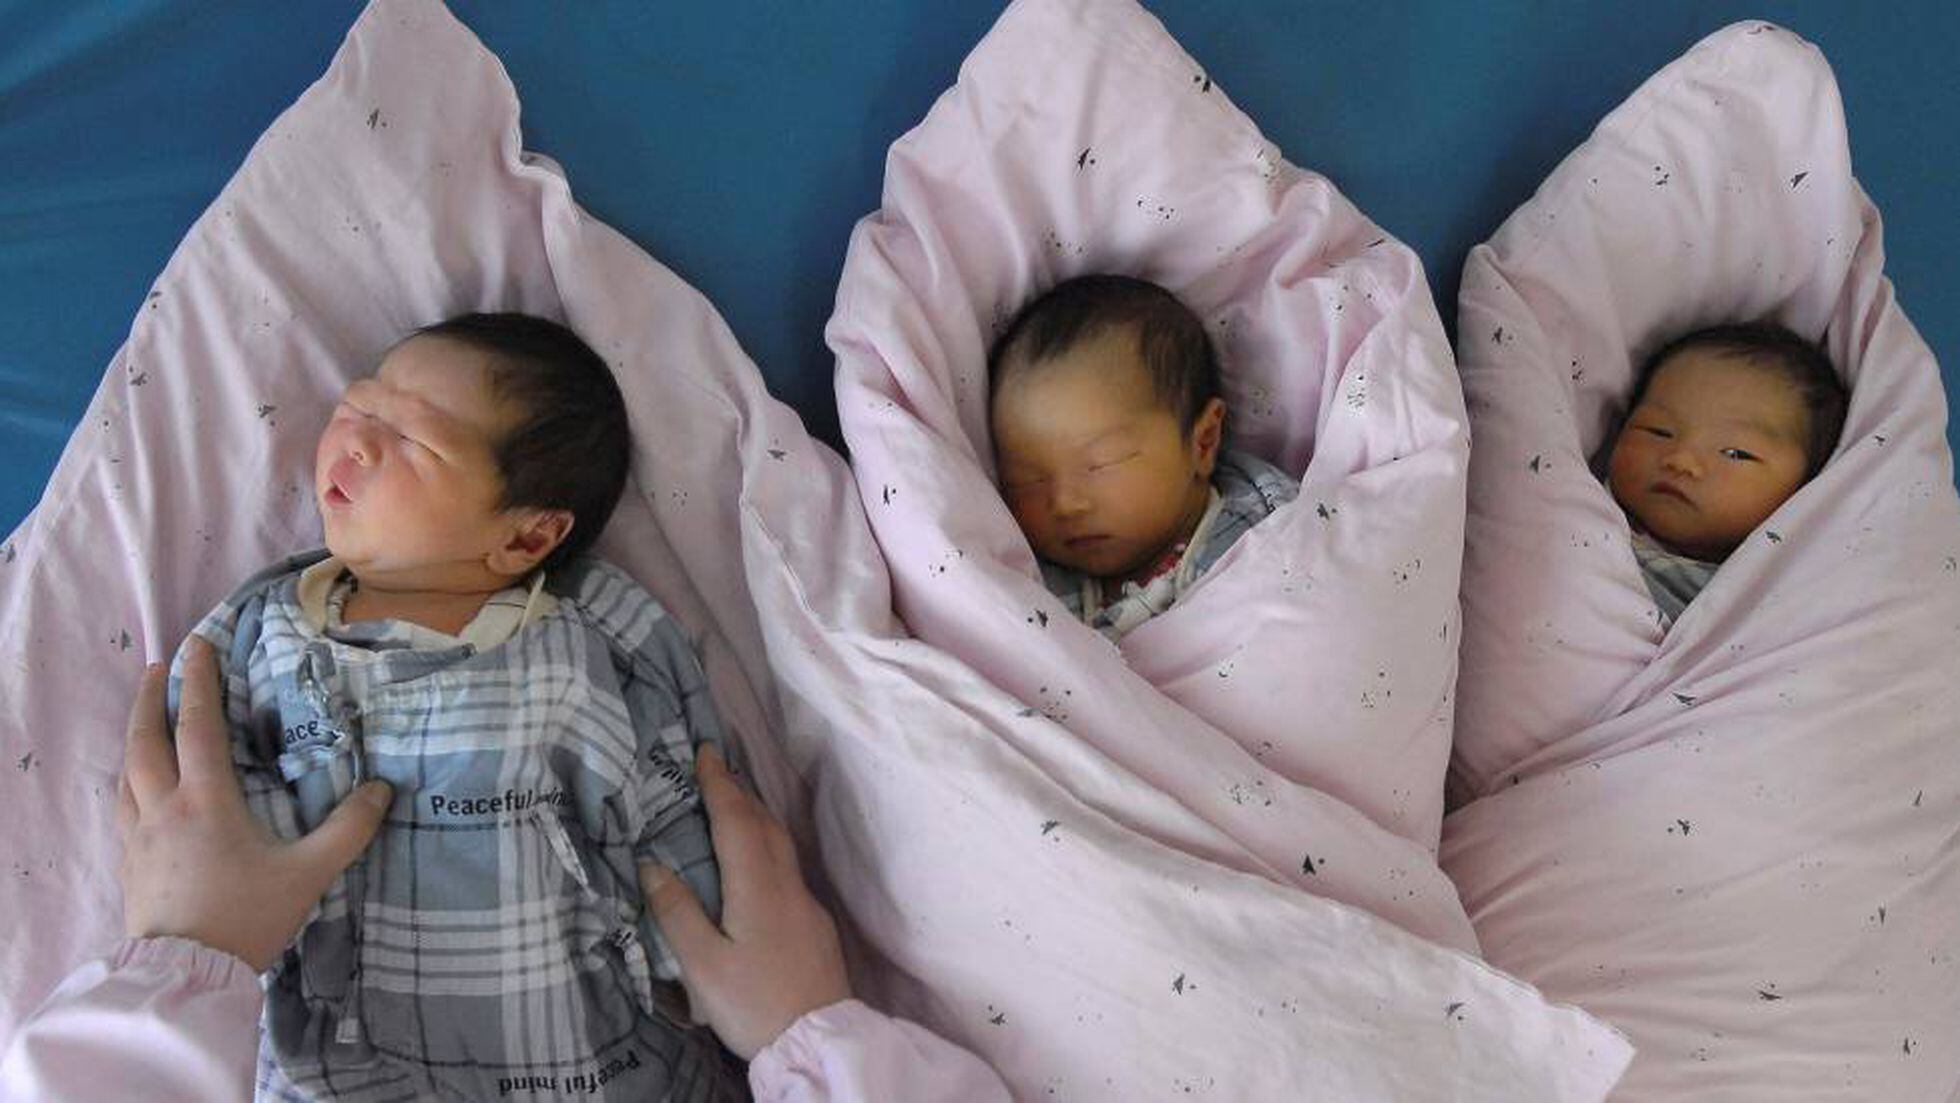 China avança na eliminação do controle total da natalidade | Internacional  | EL PAÍS Brasil